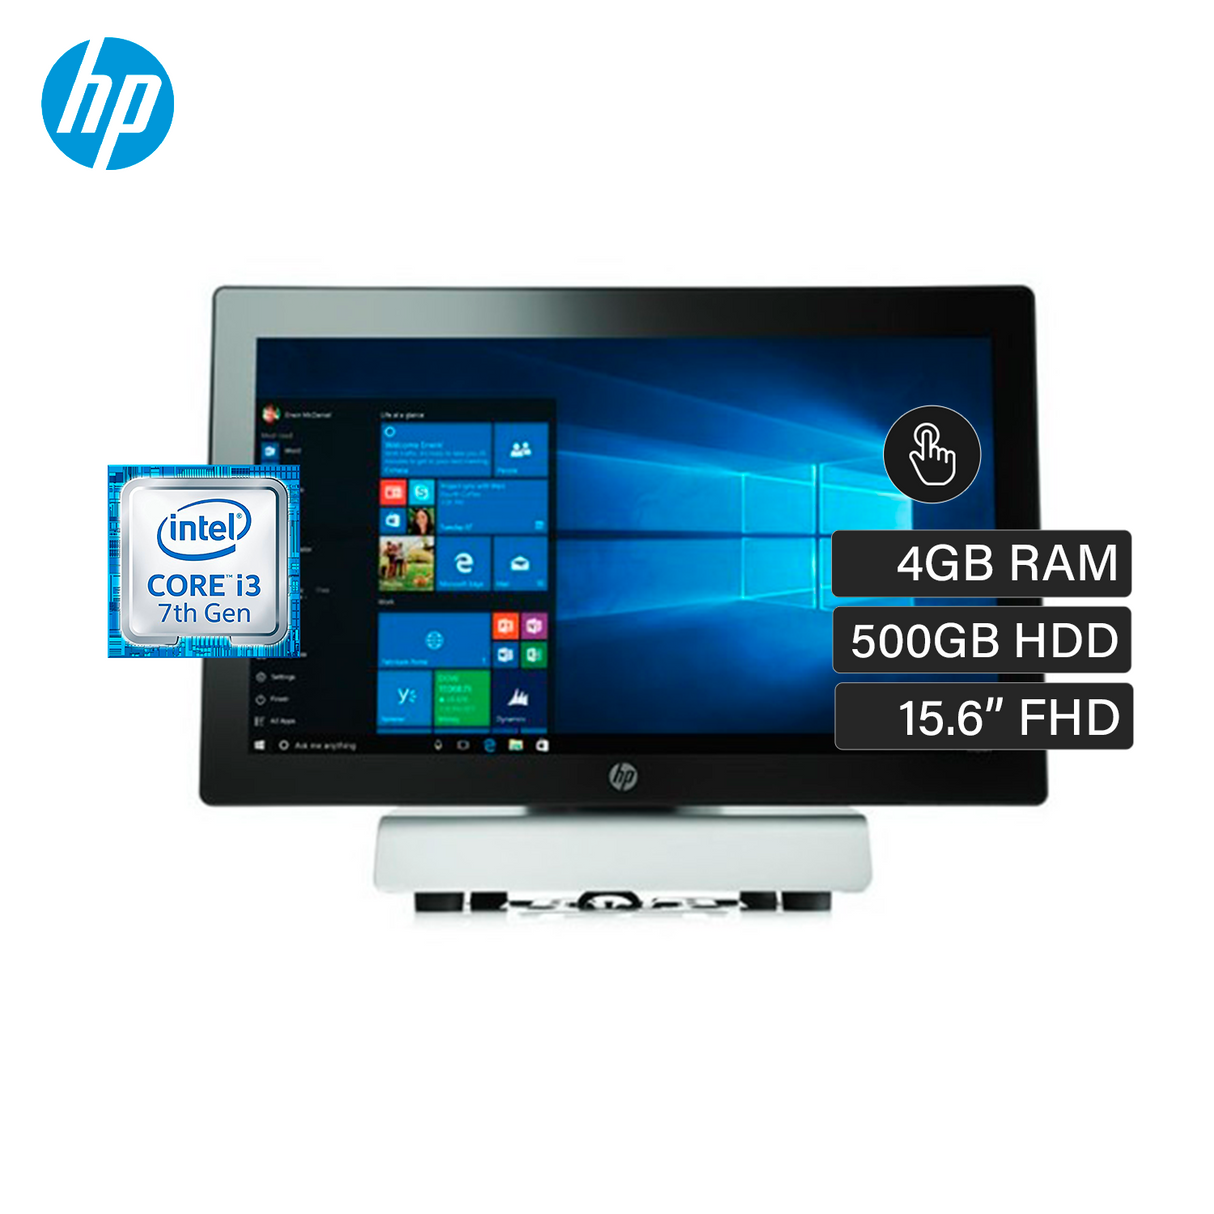 HP AIO rp9115ep Intel Core I3 7101E RAM 4GB Disco 500 HDD 15.6" FHD Tactil W10